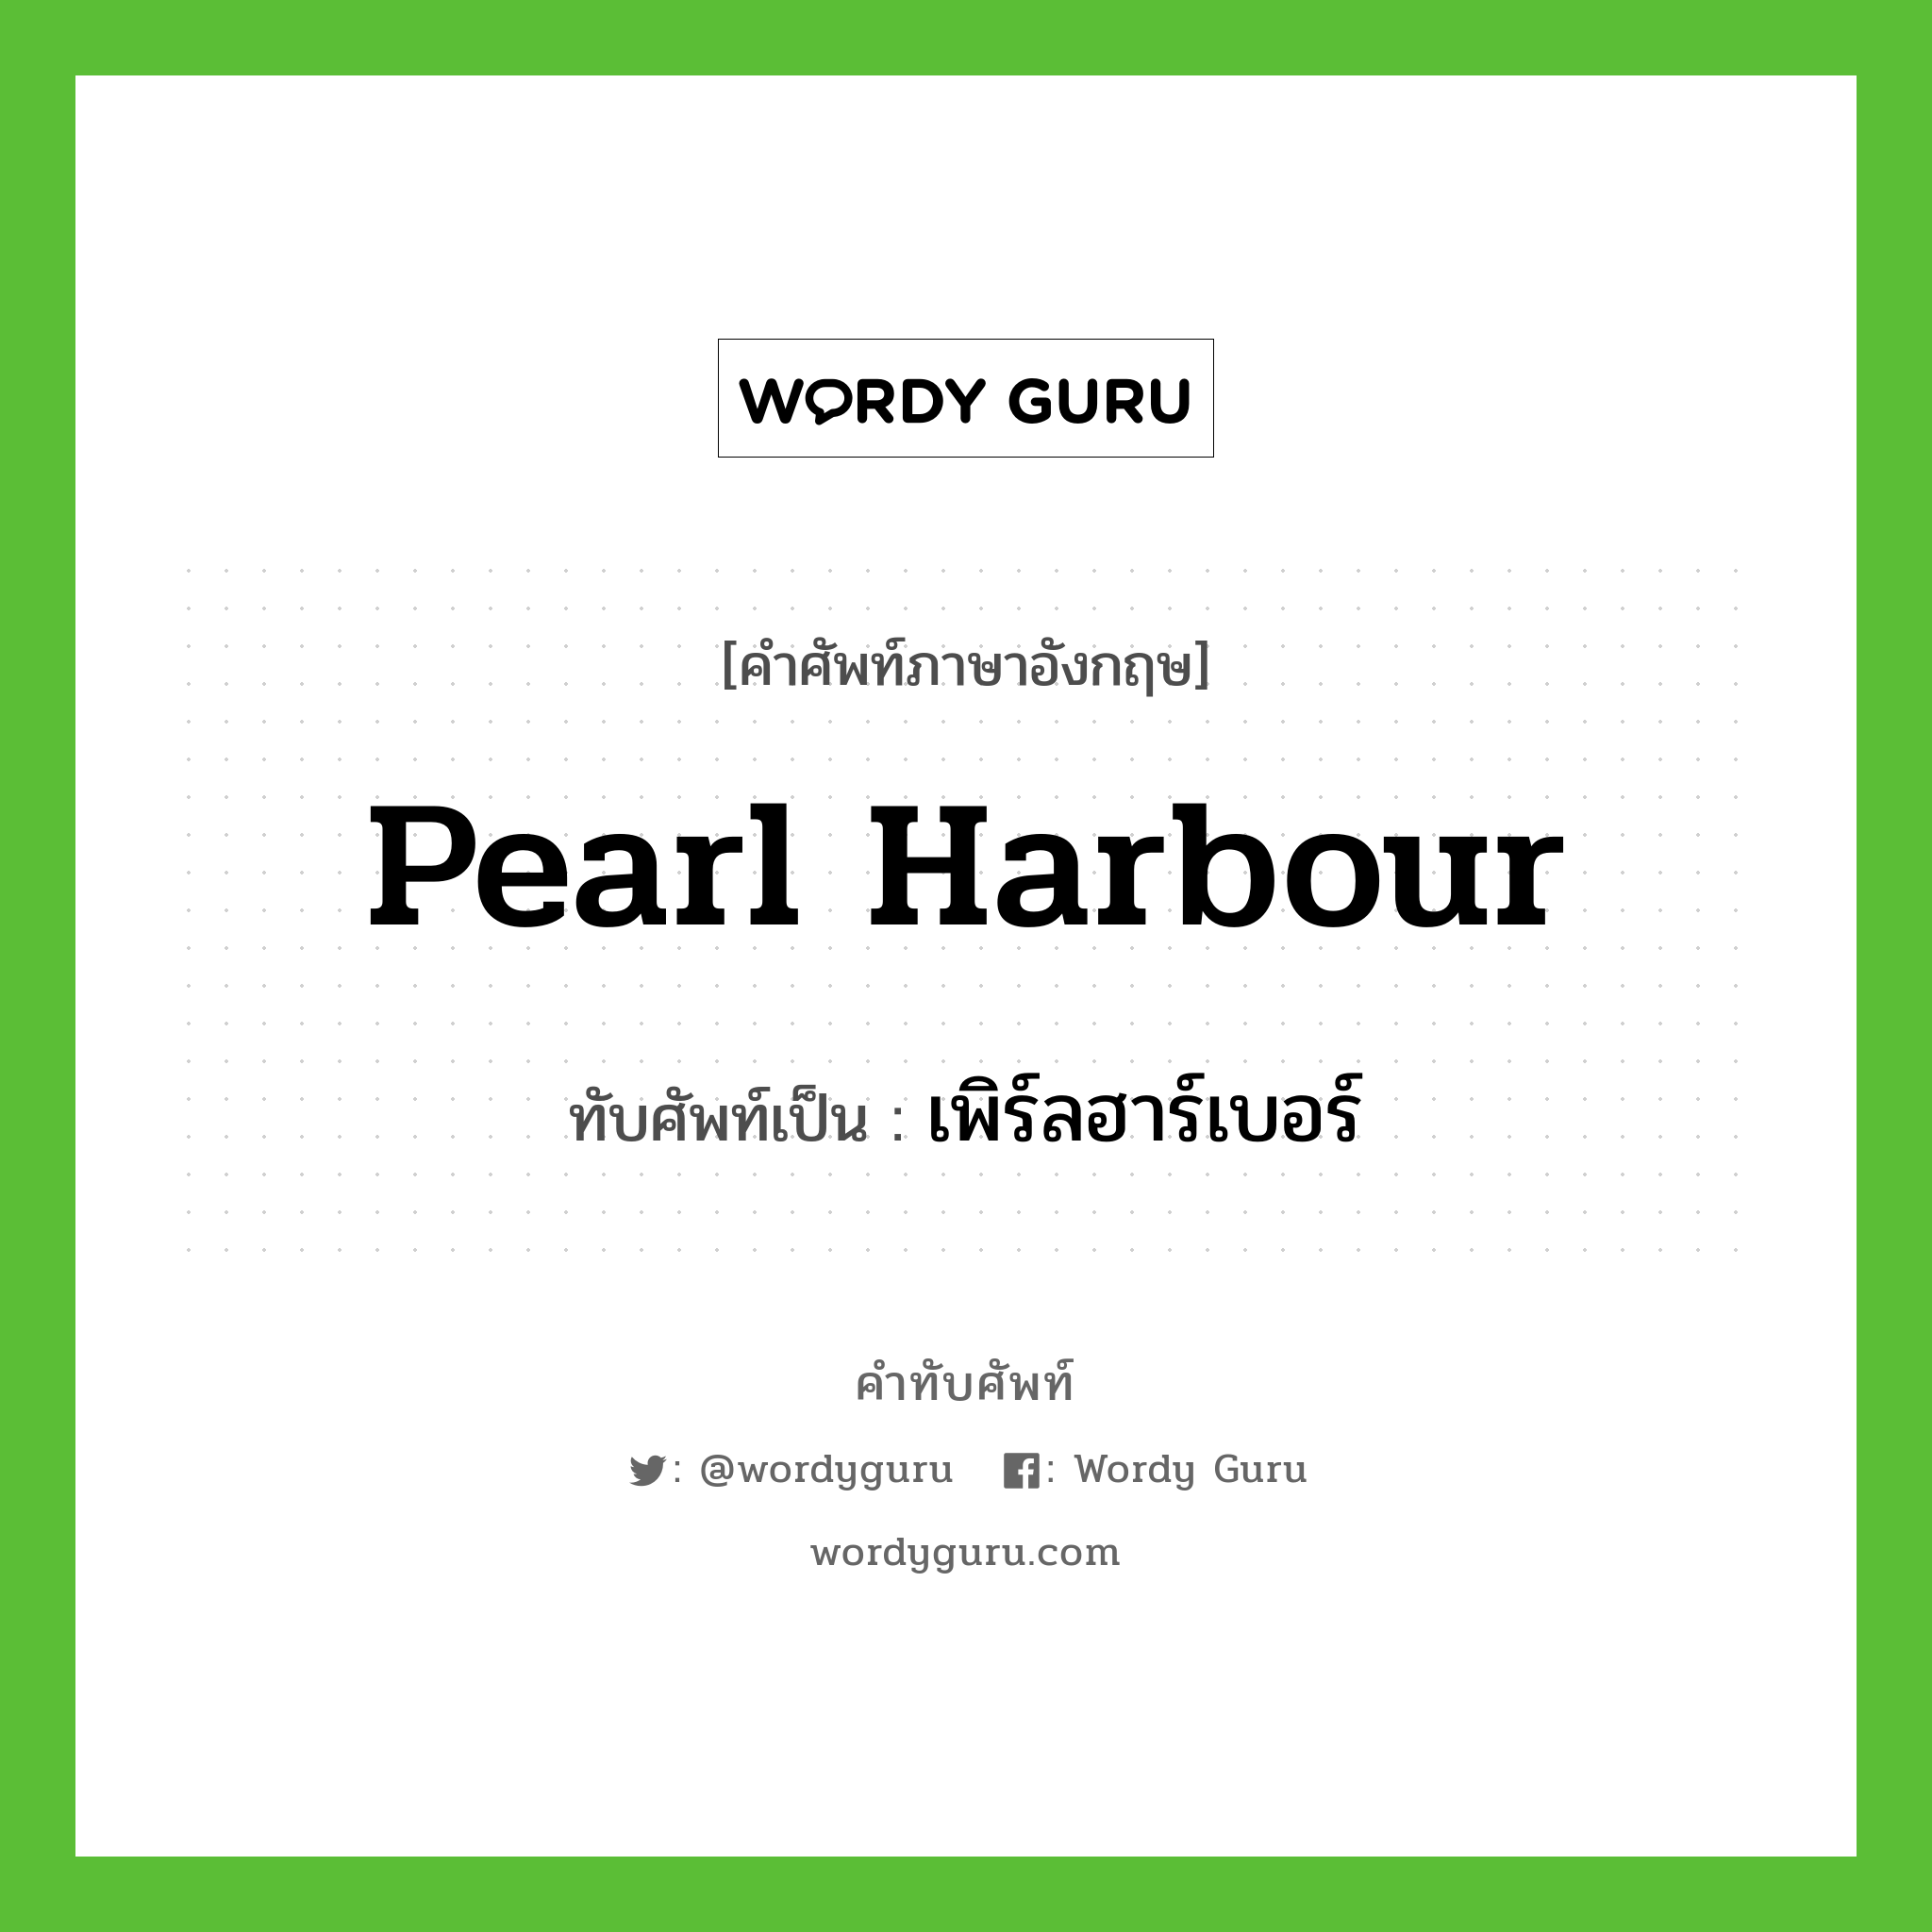 เพิร์ลฮาร์เบอร์ เขียนอย่างไร?, คำศัพท์ภาษาอังกฤษ เพิร์ลฮาร์เบอร์ ทับศัพท์เป็น Pearl Harbour